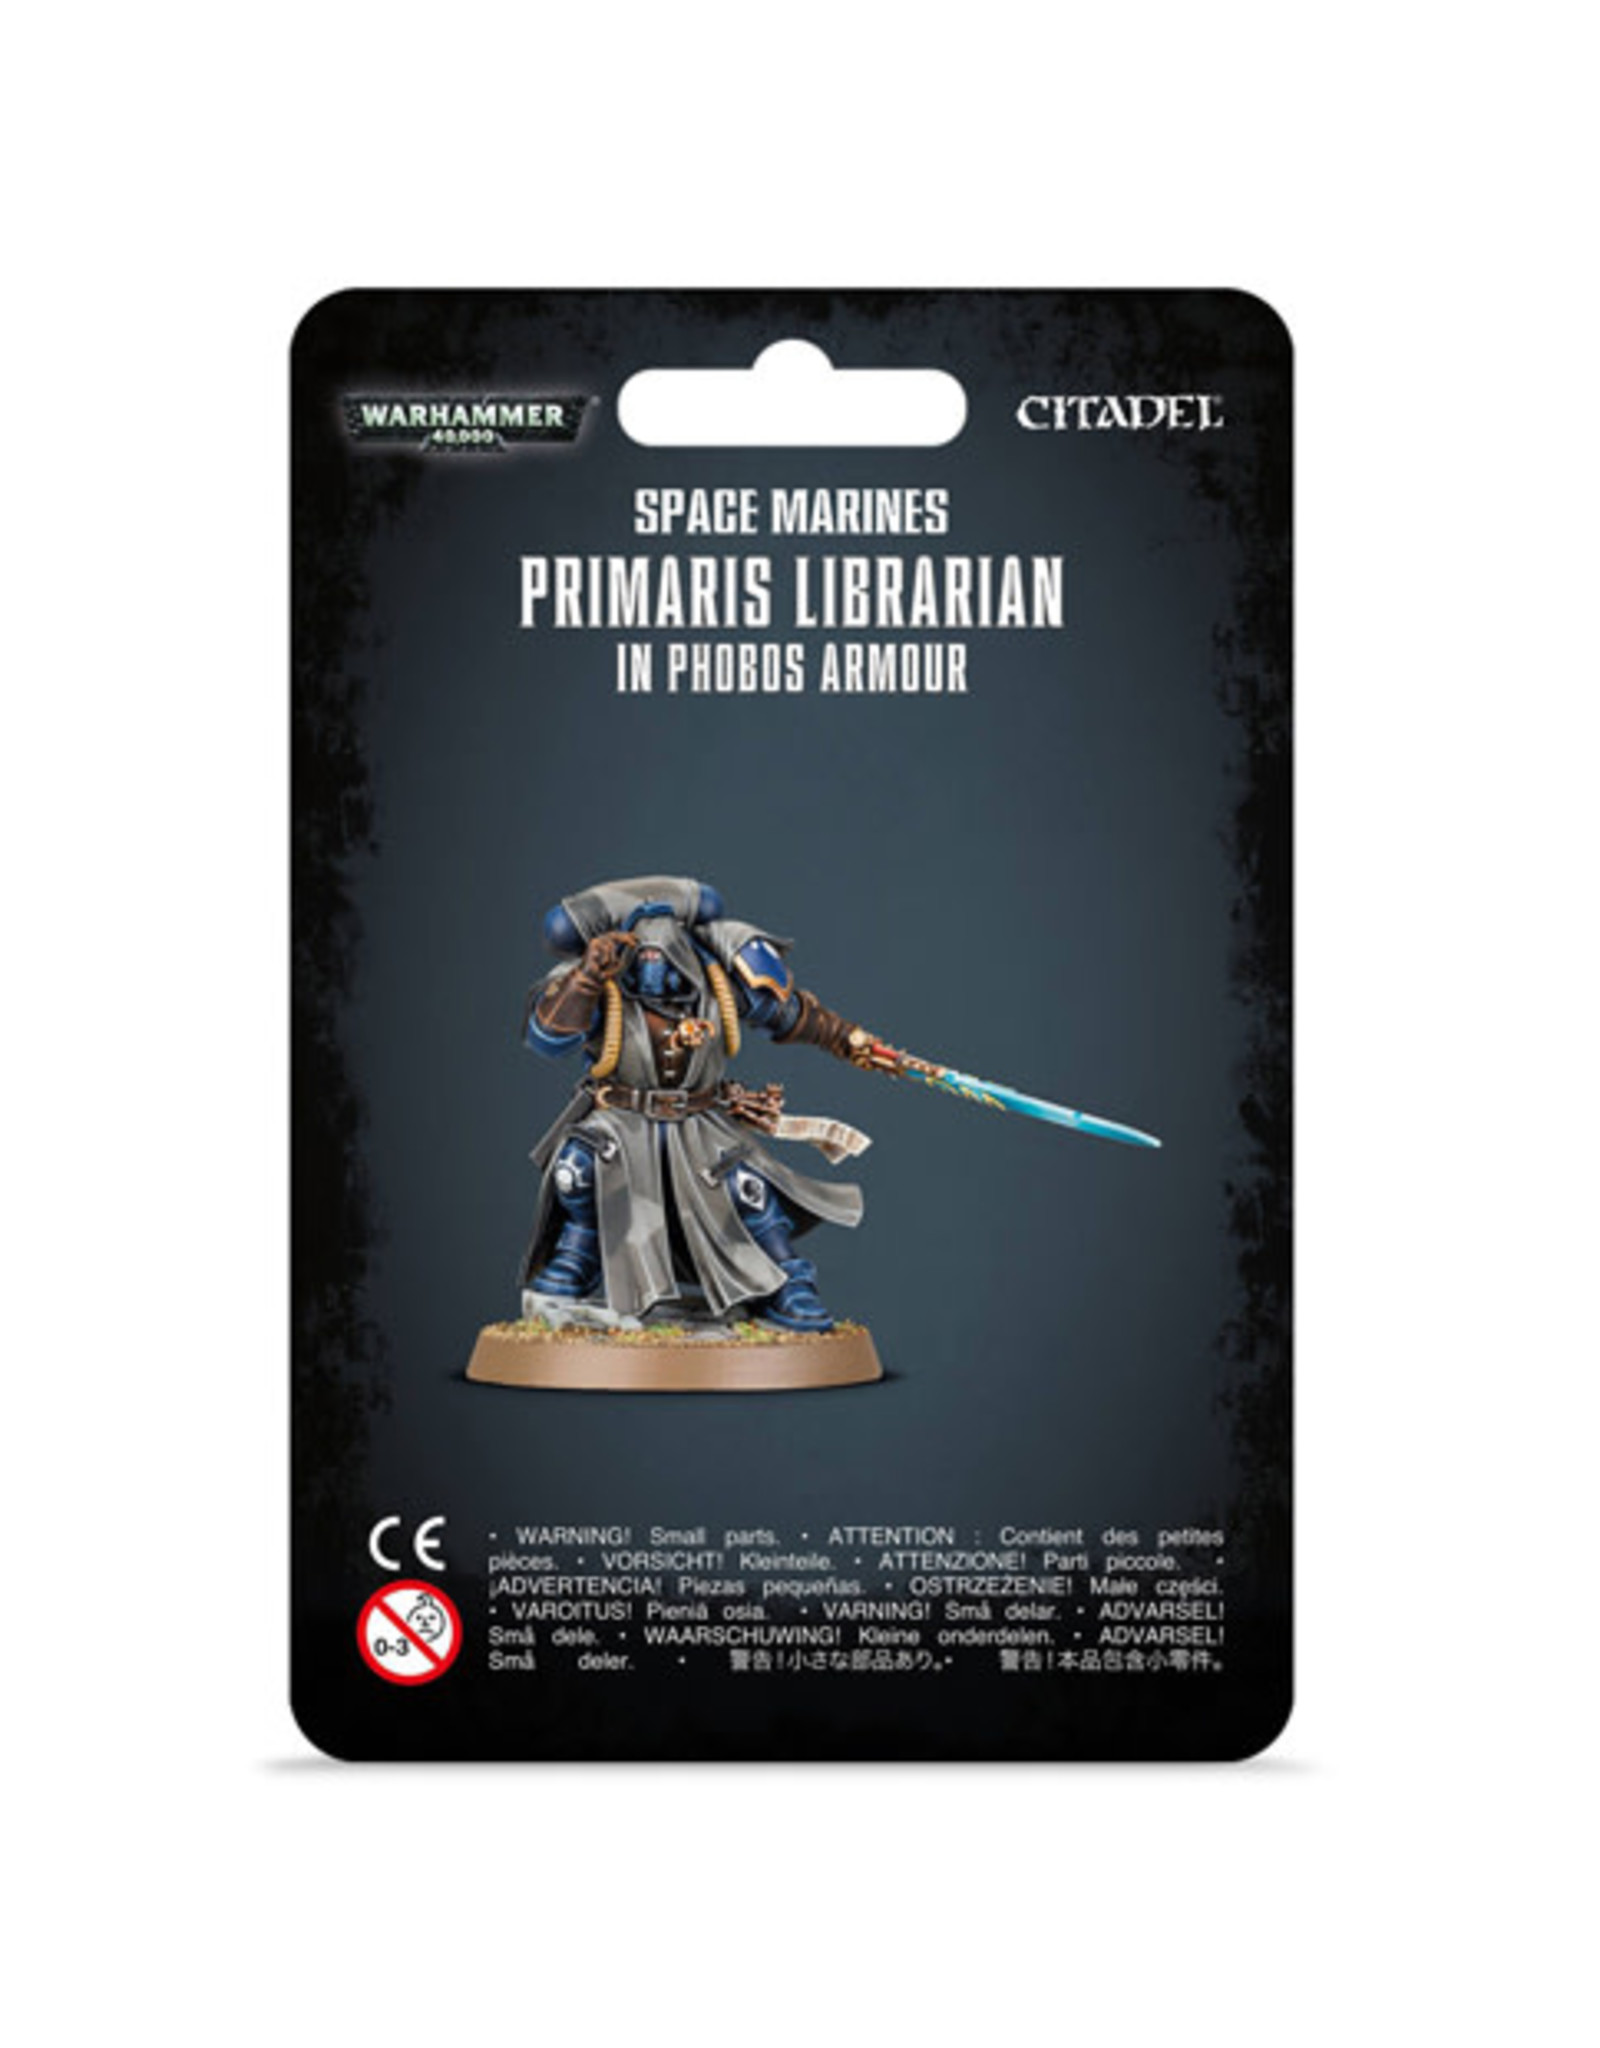 Warhammer 40k Primaris Librarian in Phobos Armor